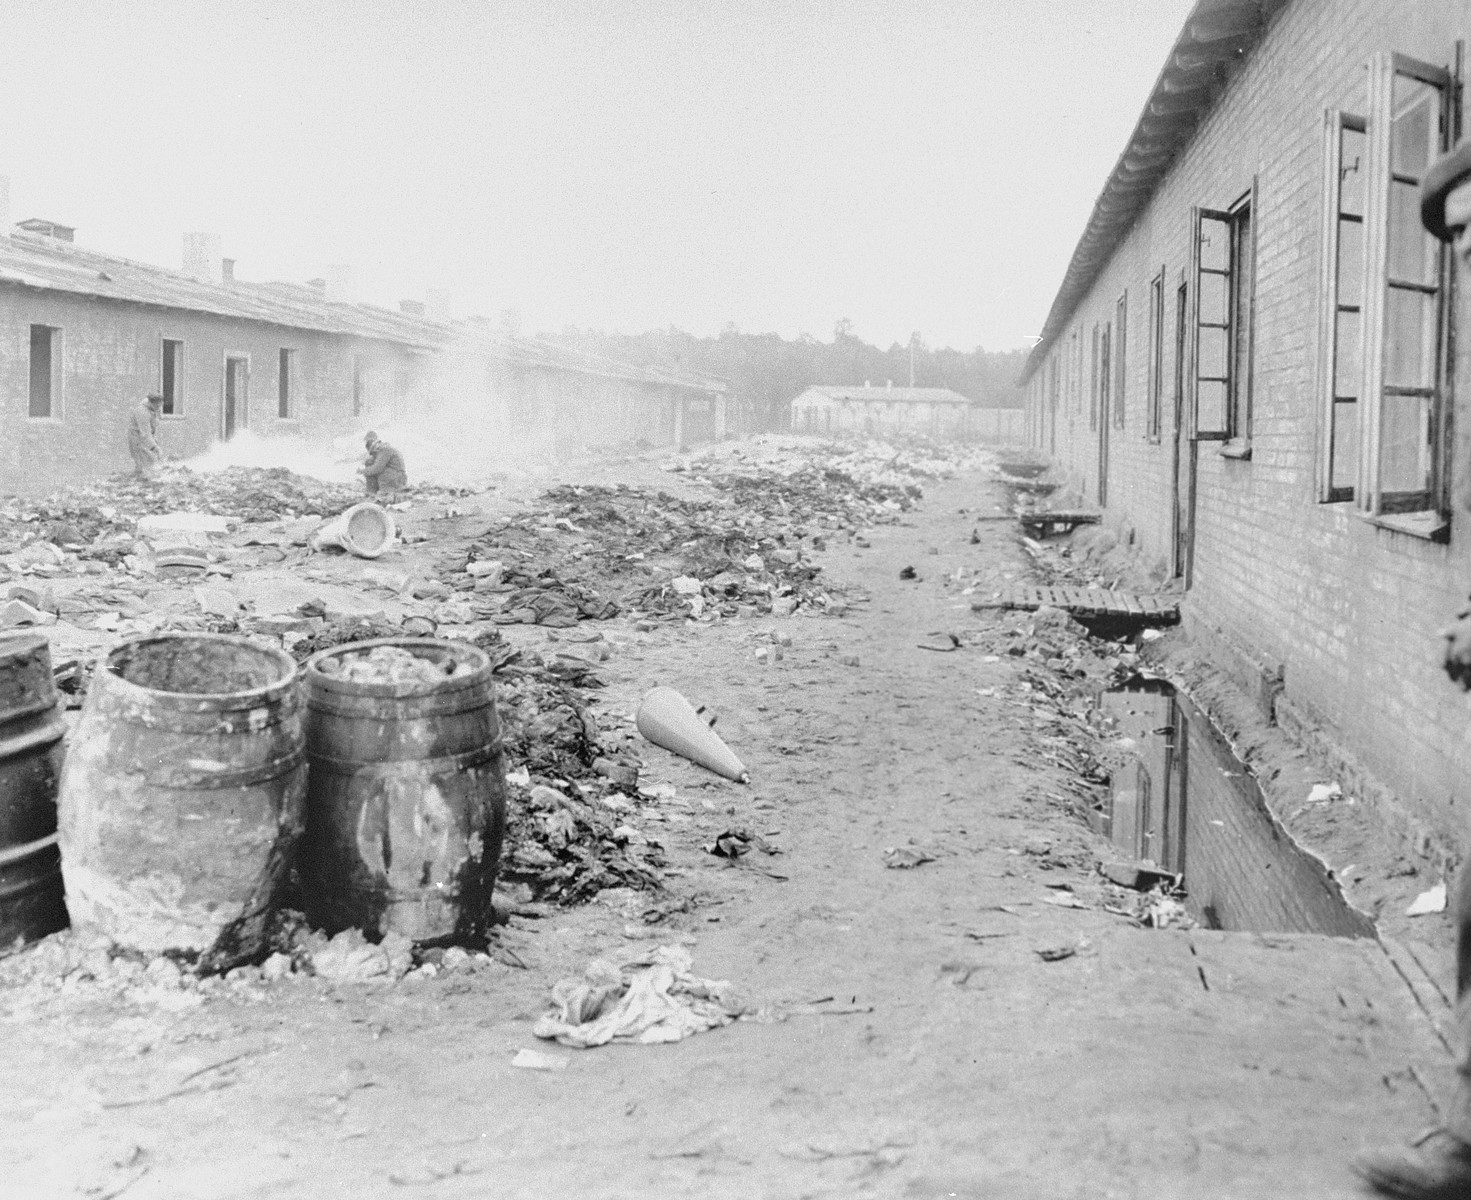 A refuse-filled yard between barracks in Bergen-Belsen concentration camp.